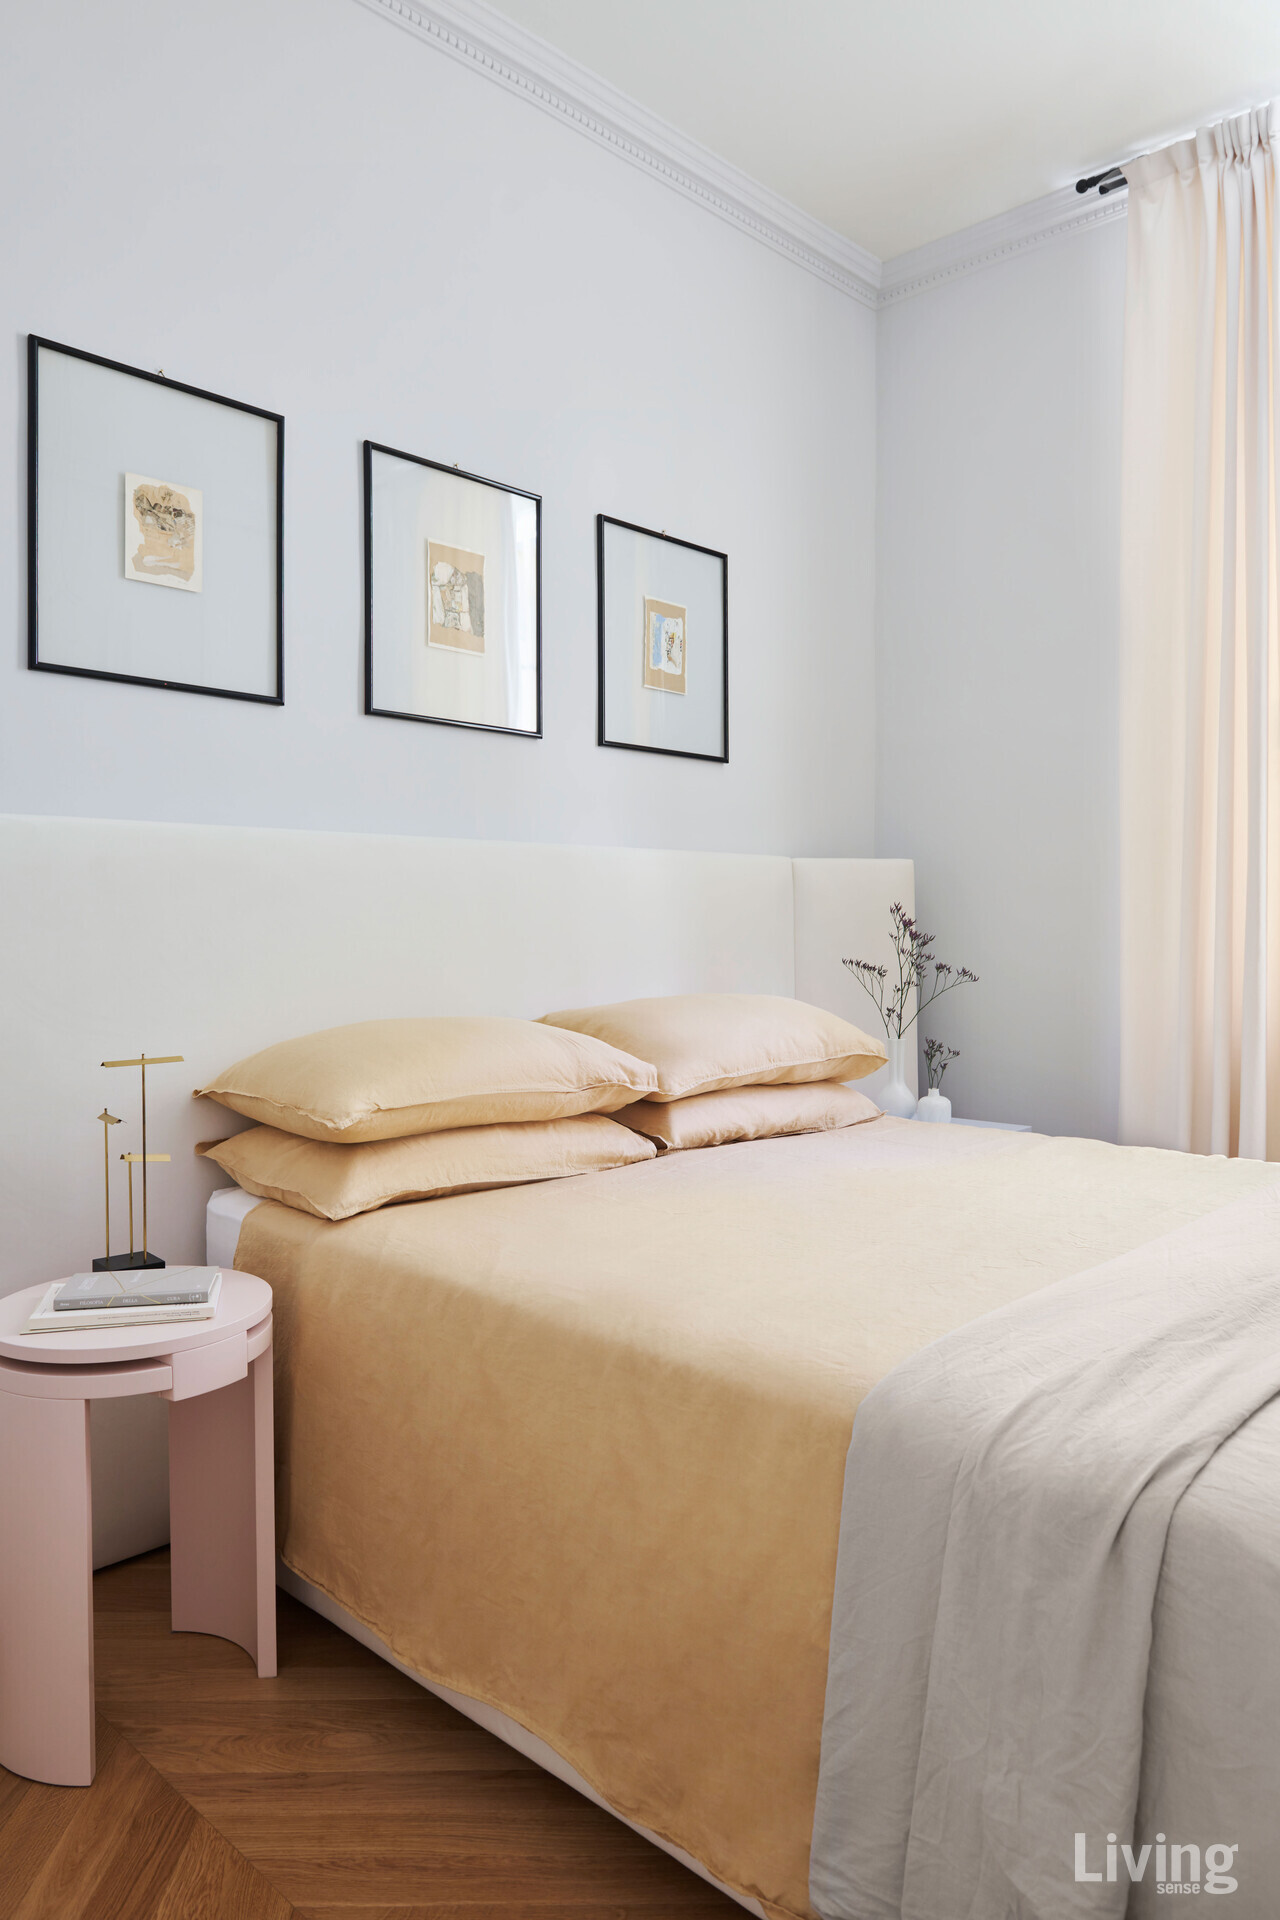 토니노 고타렐리Tonino Gottarelli의 그림이 놓인 침실. 흰색의 침대 헤드보드는 부부가 직접 디자인했다.